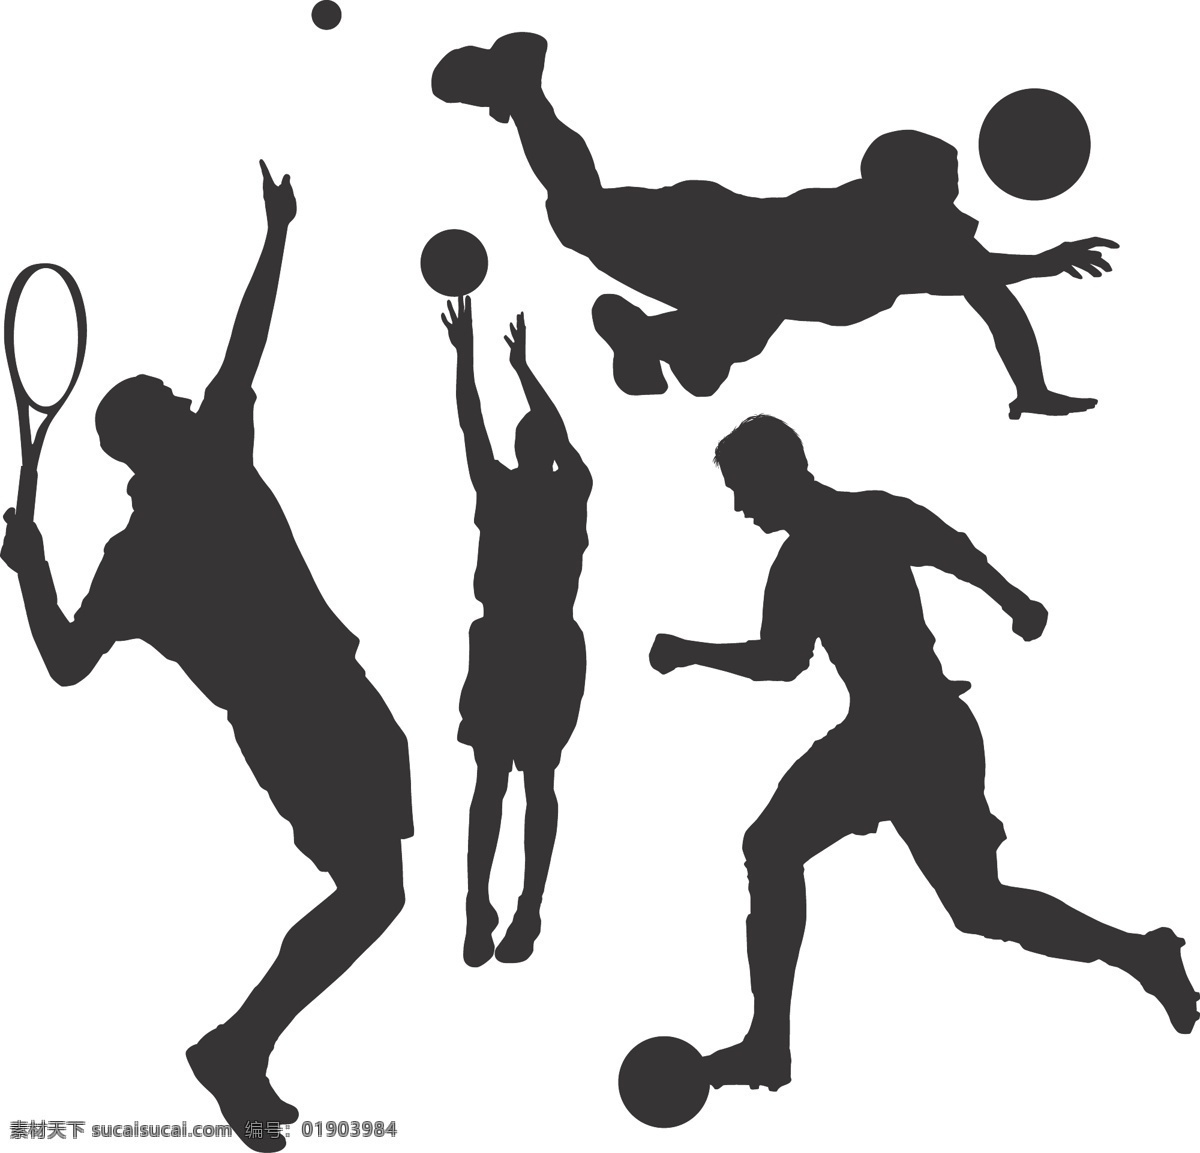 运动员剪影 运动员 剪影 篮球 网球 排球 足球 篮球员 网球员 排球员 足球员 篮球运动员 网球运动员 排球运动员 足球运动员 共享设计矢量 人物图库 职业人物